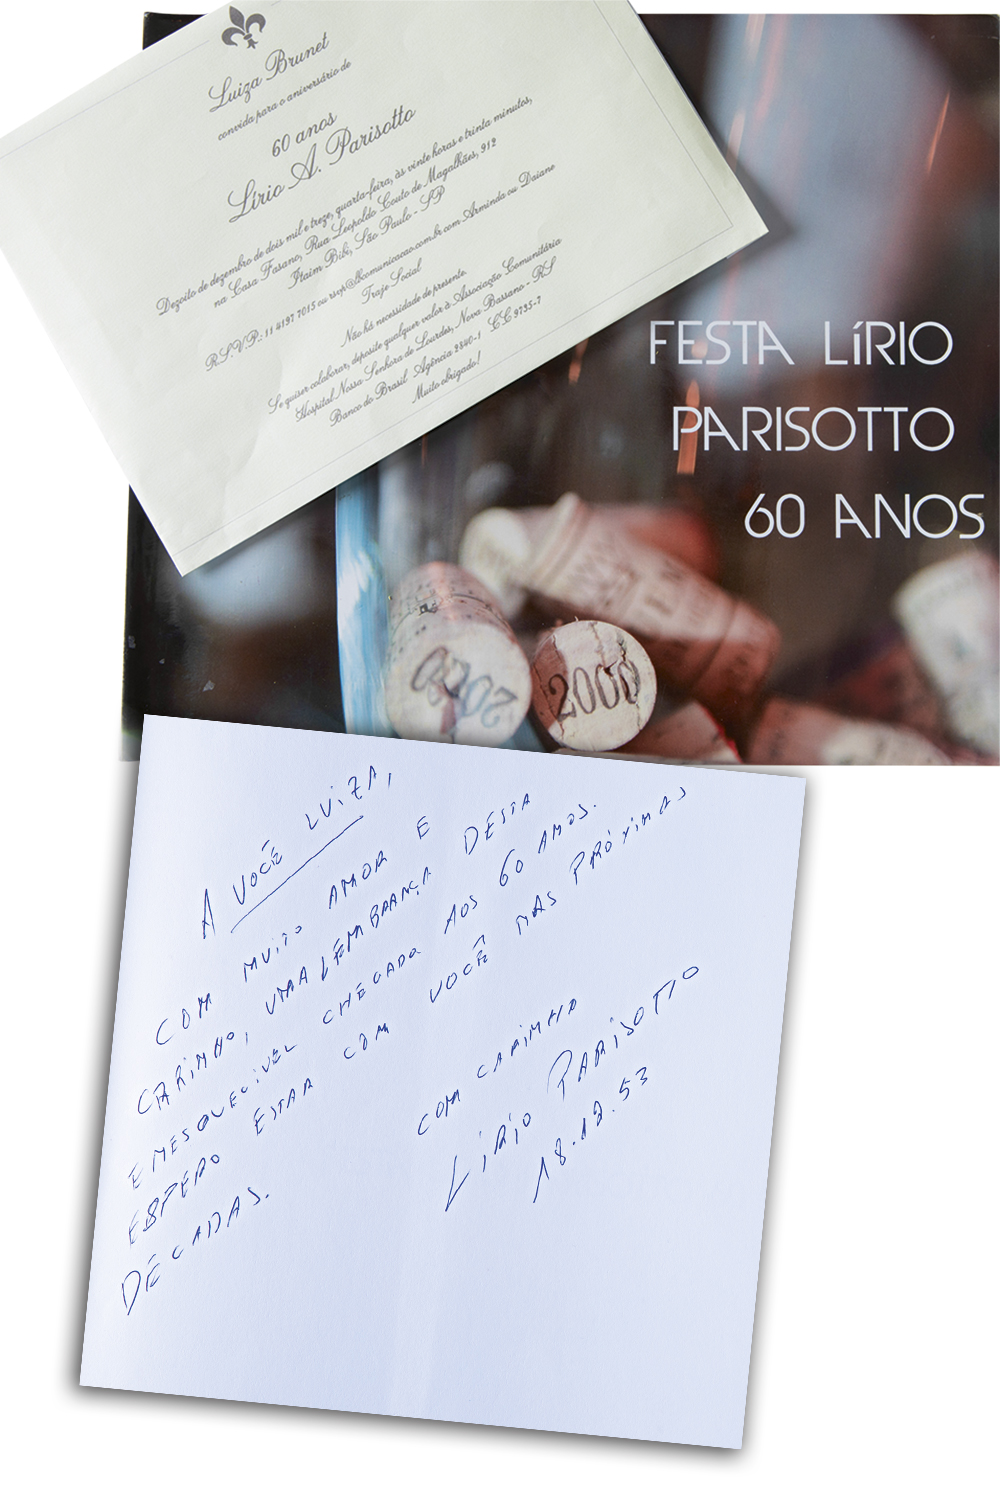 RETRATOS DA VIDA - Convite de Luiza Brunet para o aniversário de 60 anos de Lírio Parisotto (no alto) e o livro da festa com dedicatória do empresário a ela (acima e ao lado) -